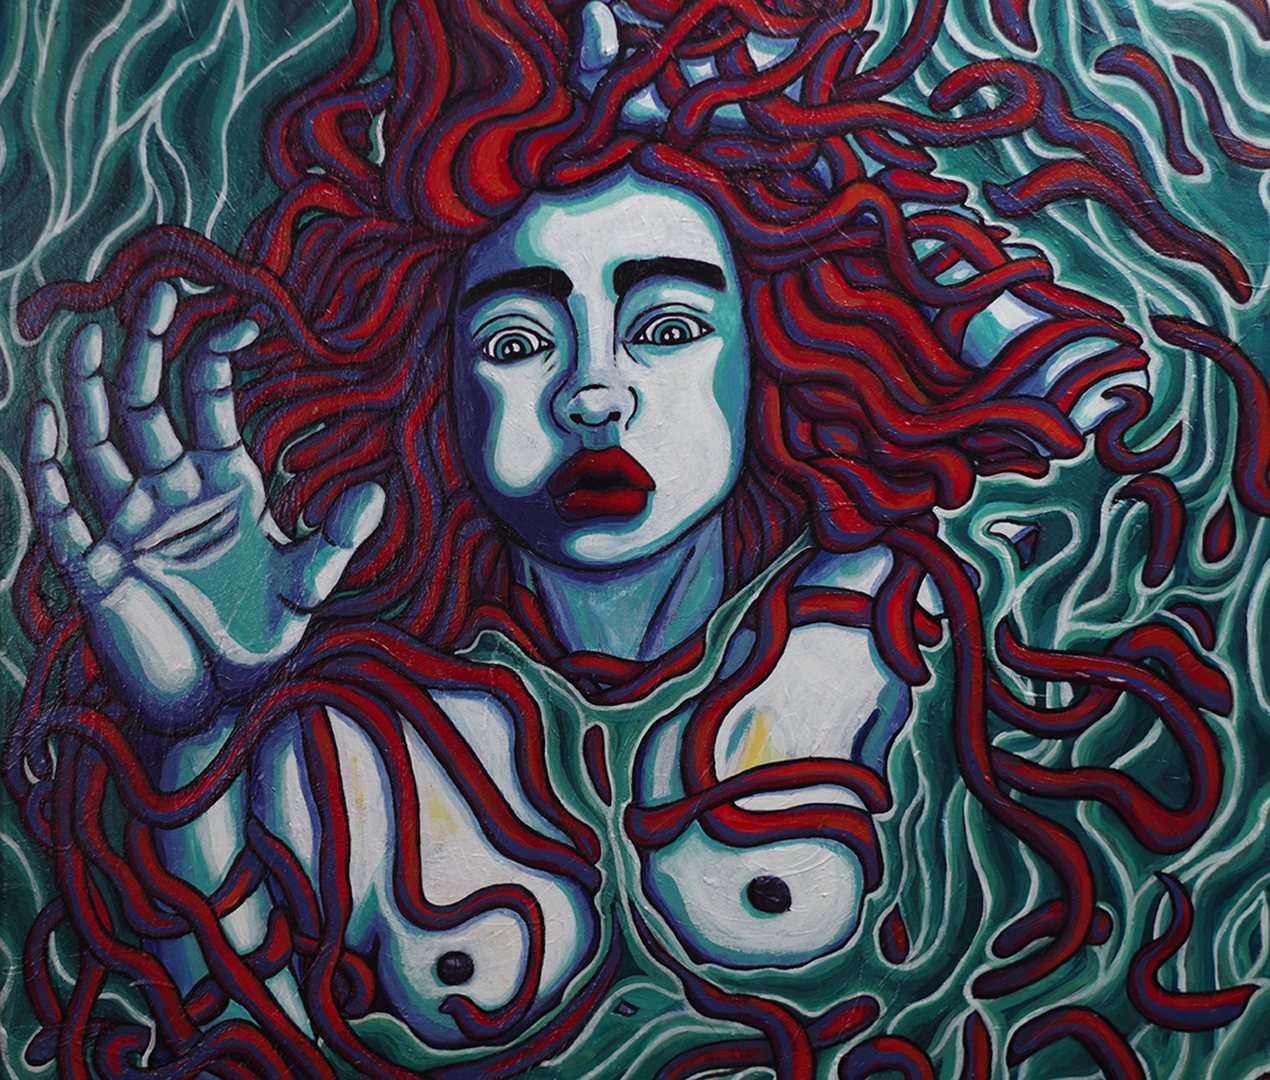 Femme dans l'eau, acrylique sur toile, 100 x 65 cm, février 2020, Lille, France